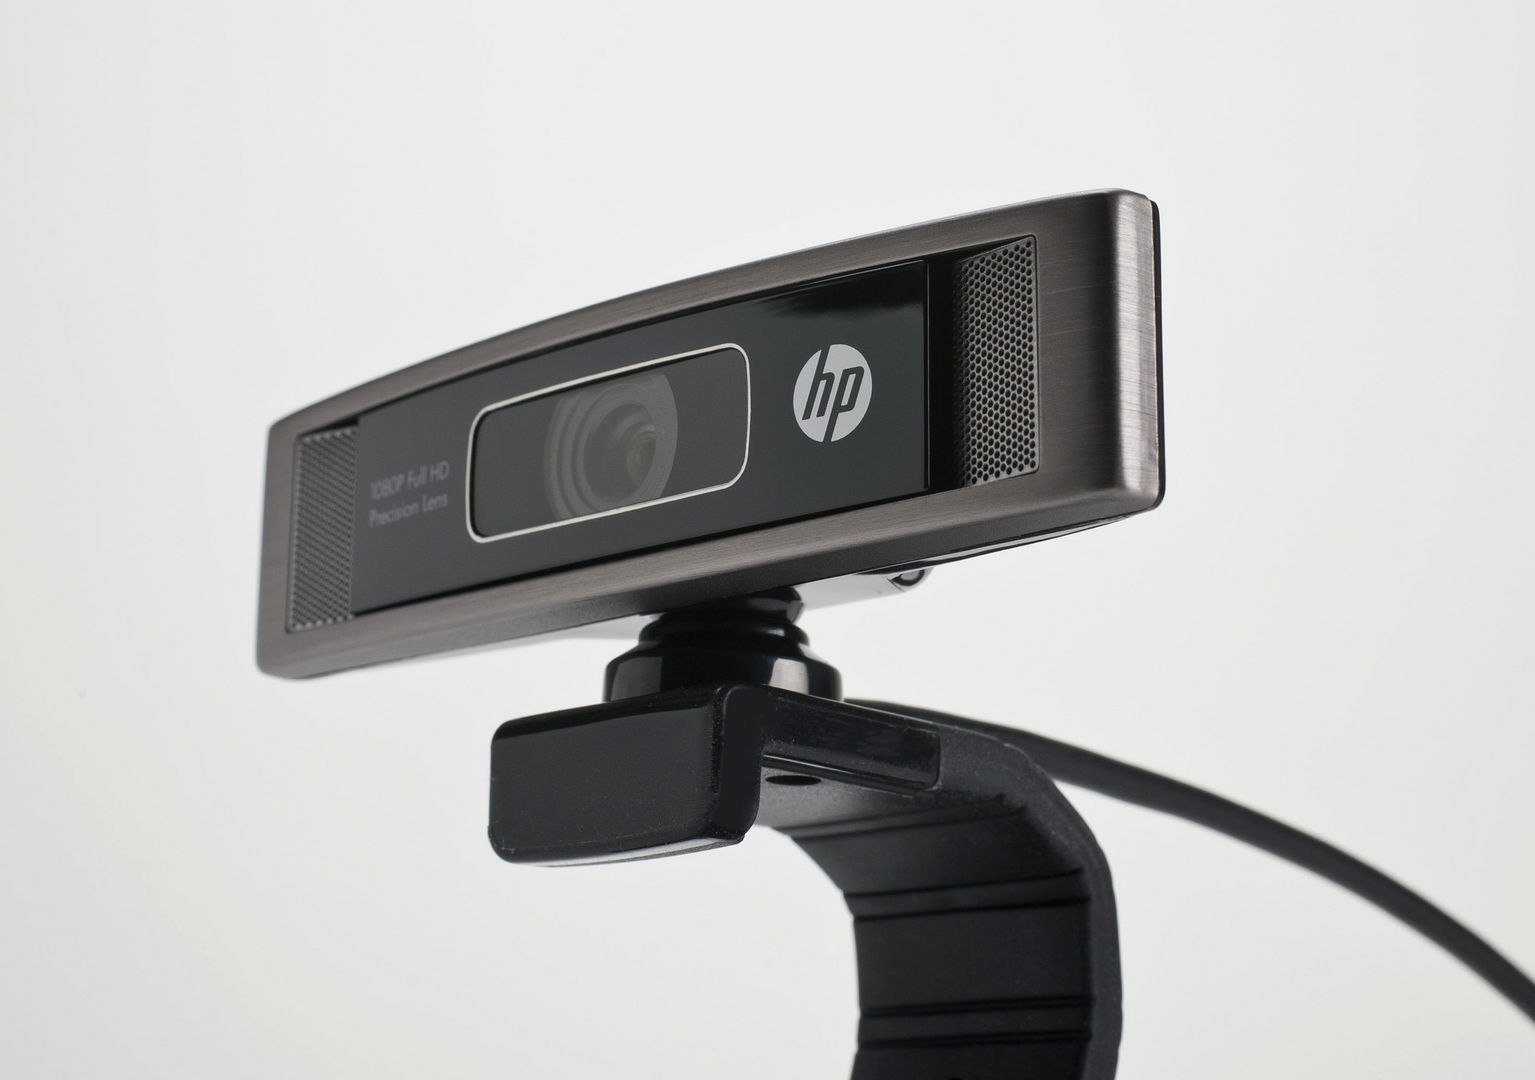 HP webcam HD 5210